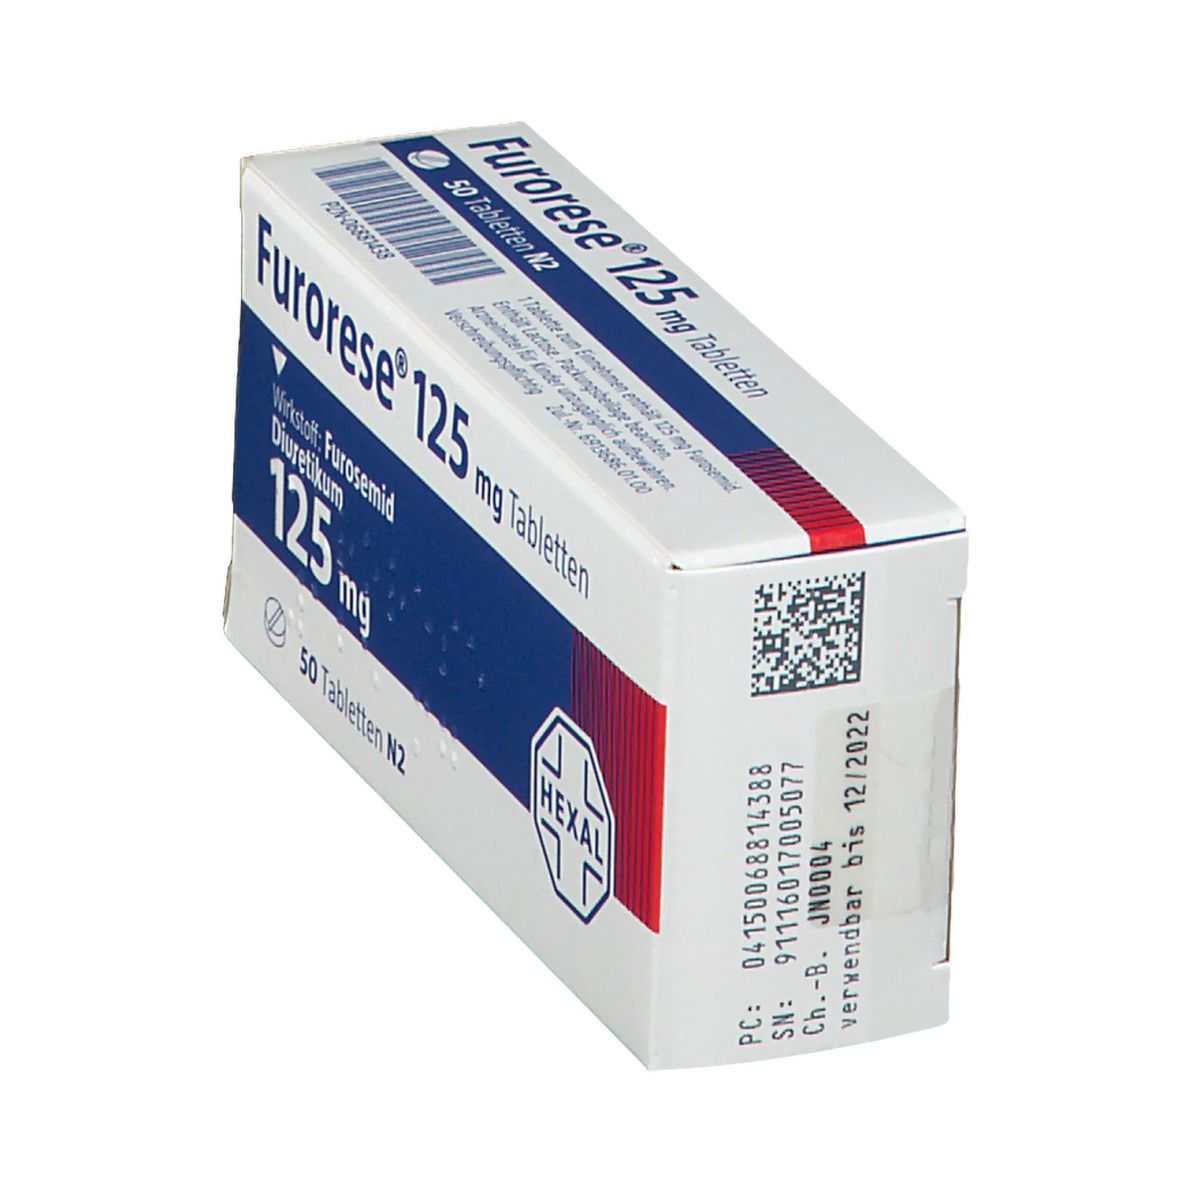 Furorese® 125 mg